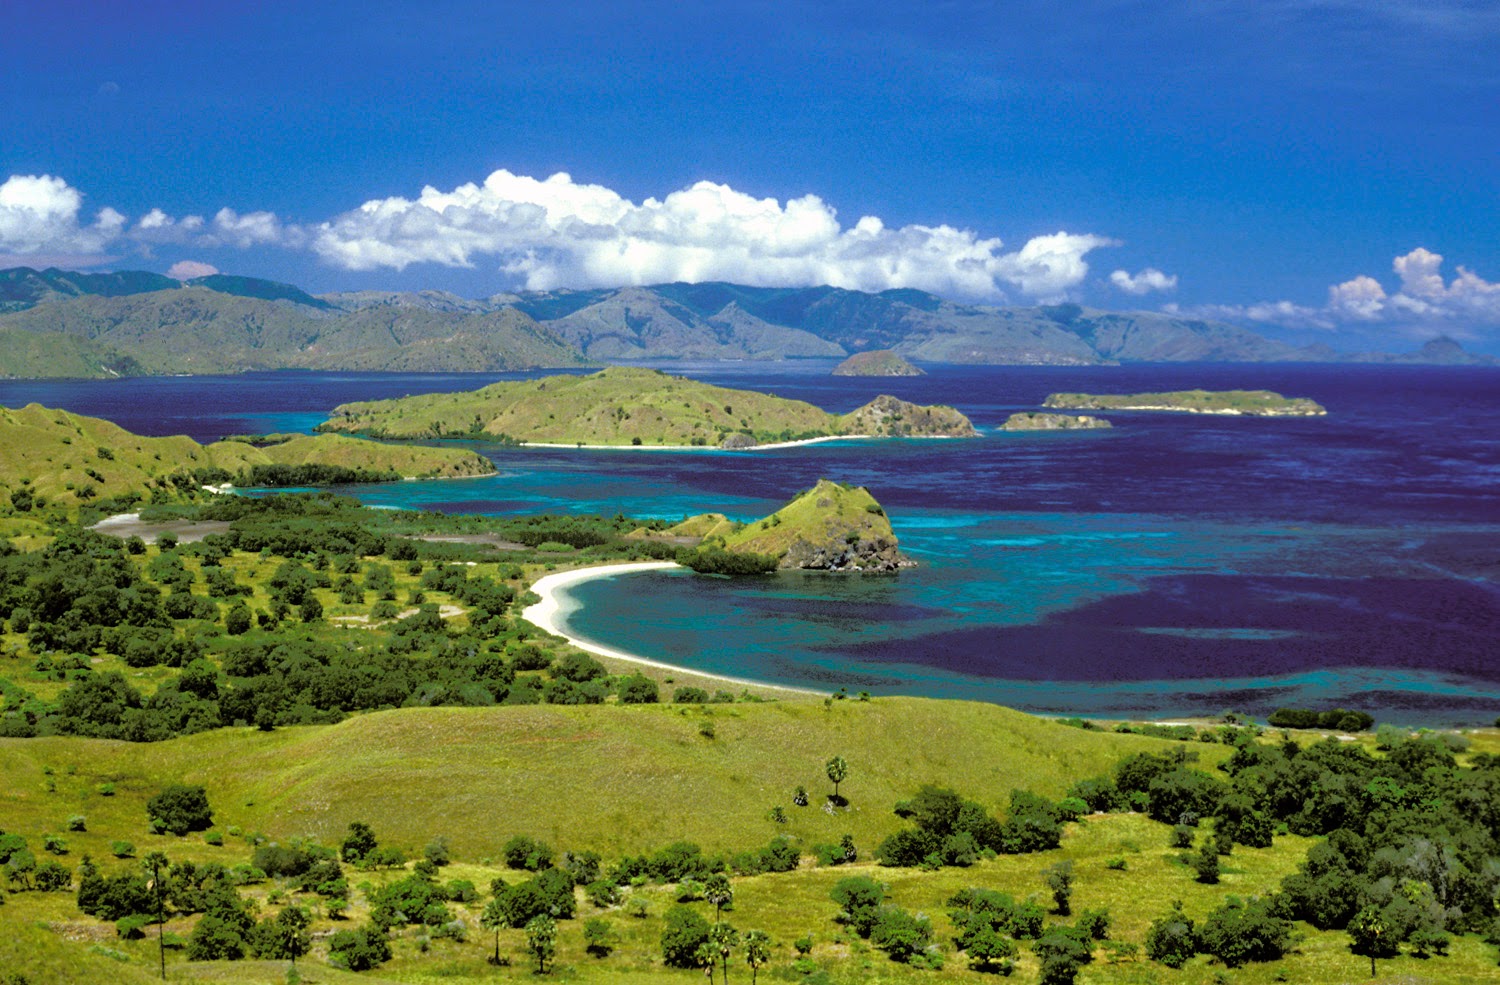 Paket Wisata Pulau Komodo | Wisata Bandung